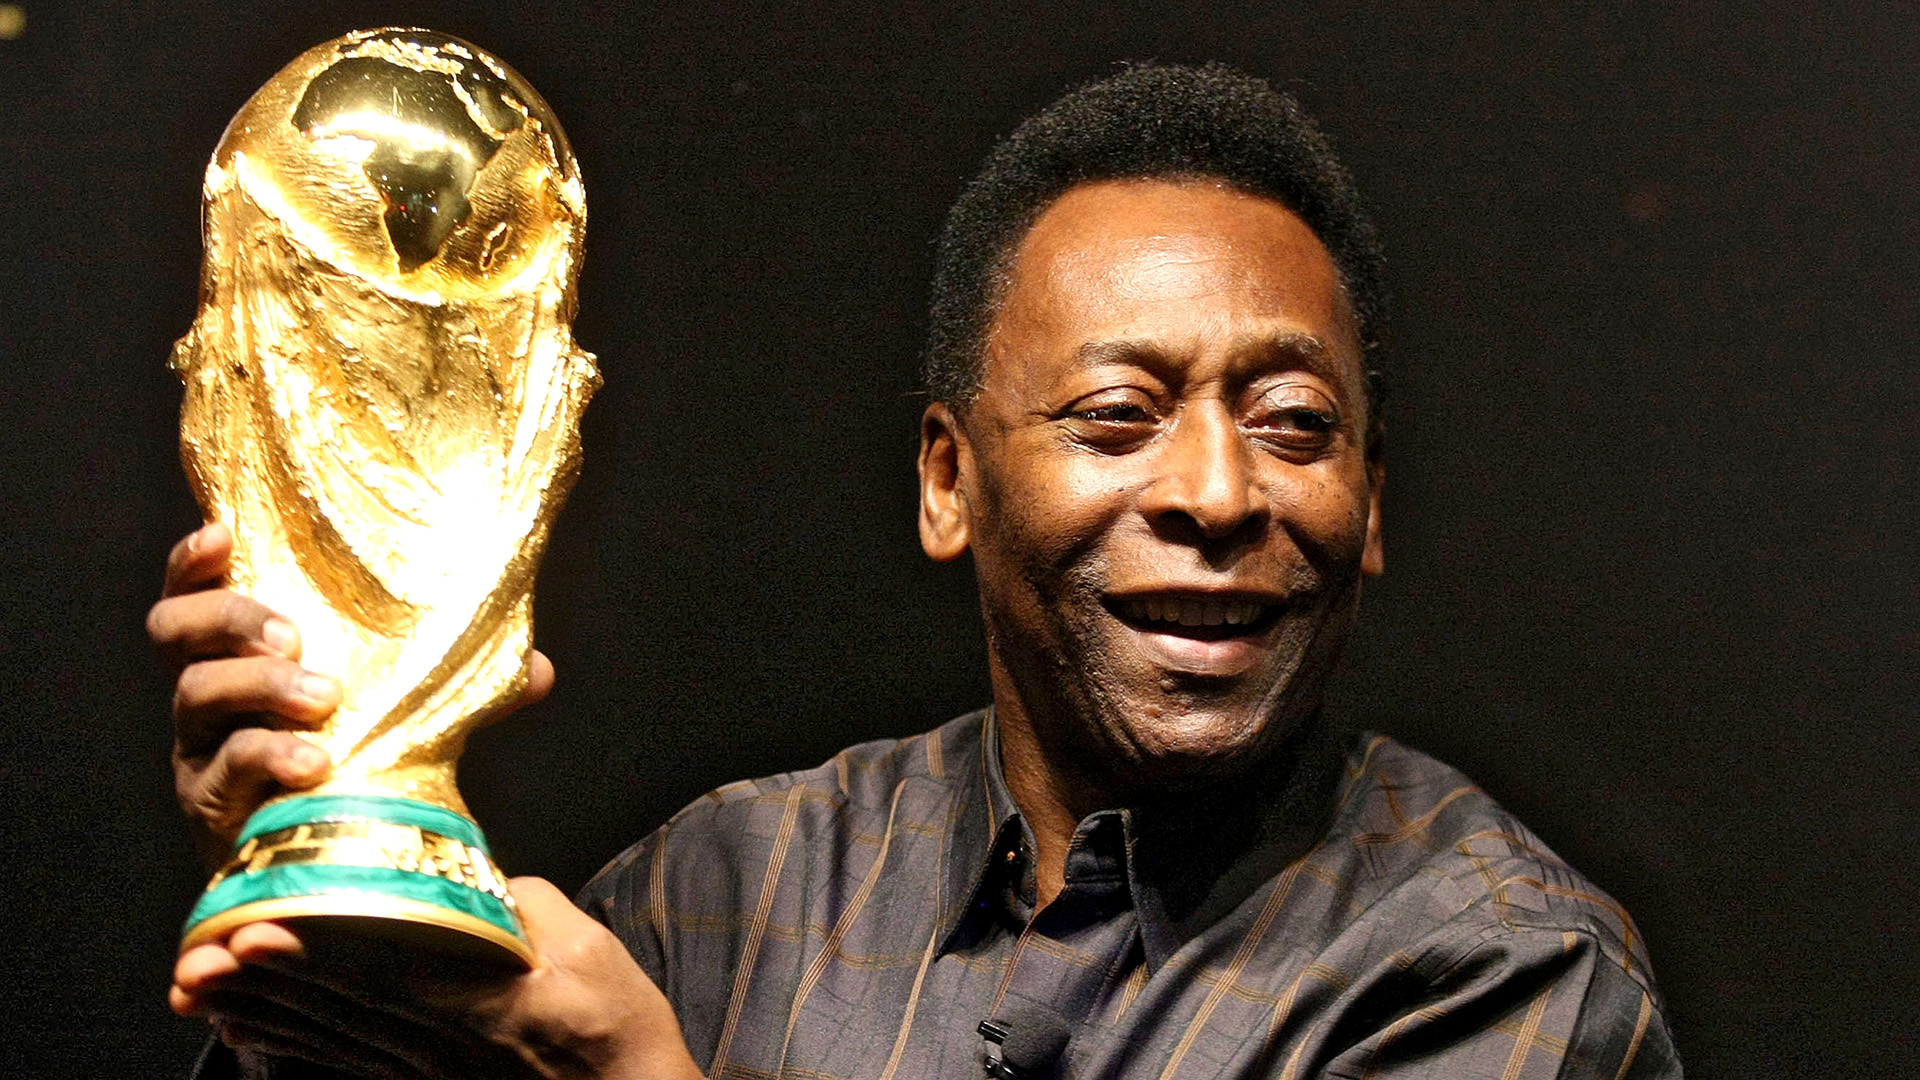 Cuộc đời thăng trầm của Vua bóng đá Pelé: Từng không đủ tiền mua 1 quả bóng đến huyền thoại 3 lần vô địch World Cup, tuổi 82 sức khỏe suy yếu, phải chống chọi với nhiều loại bệnh - Ảnh 3.